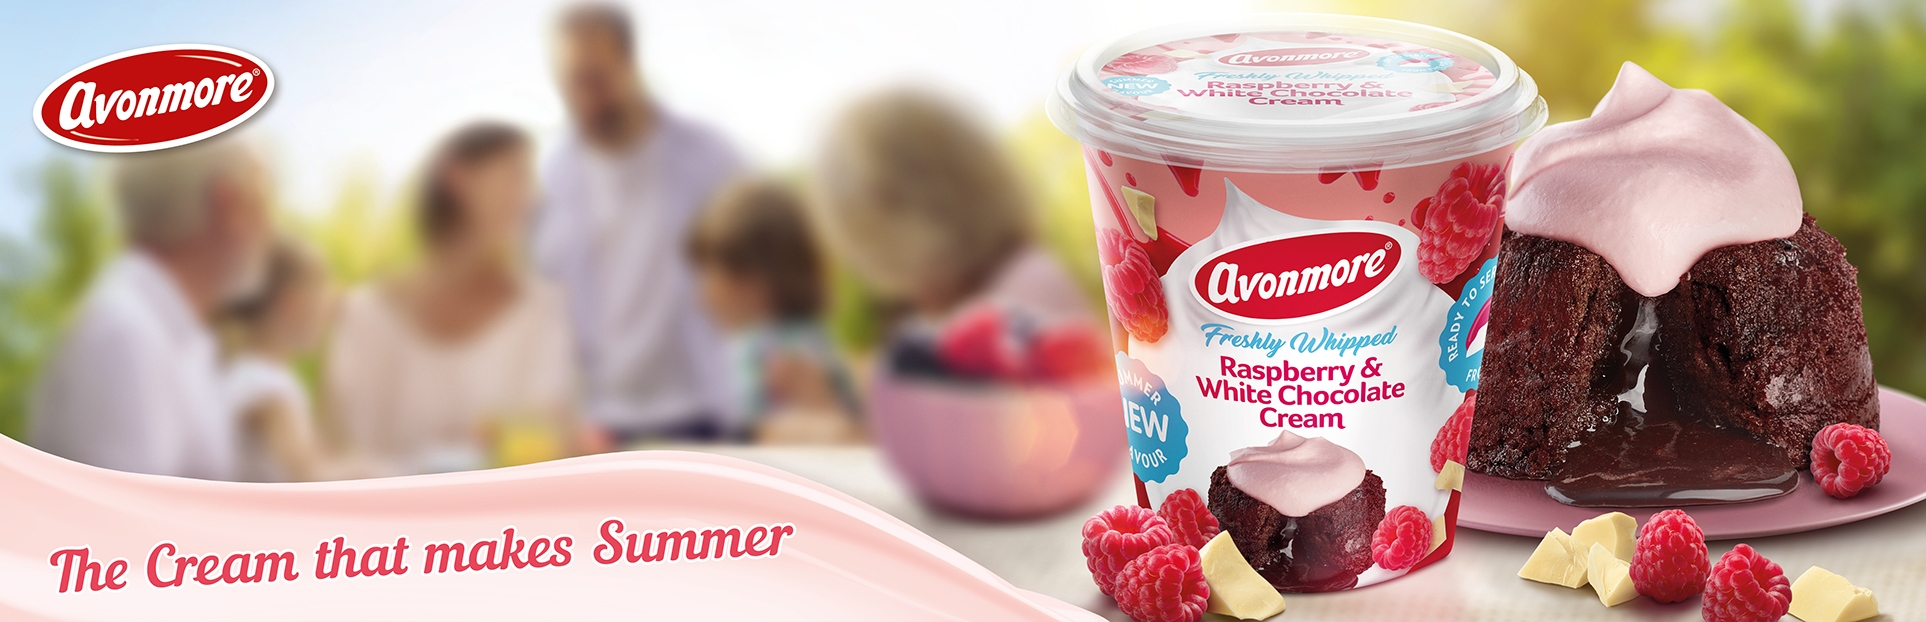 Avonmore Raspberry & white chocolate cream. The cream that makes Summer.